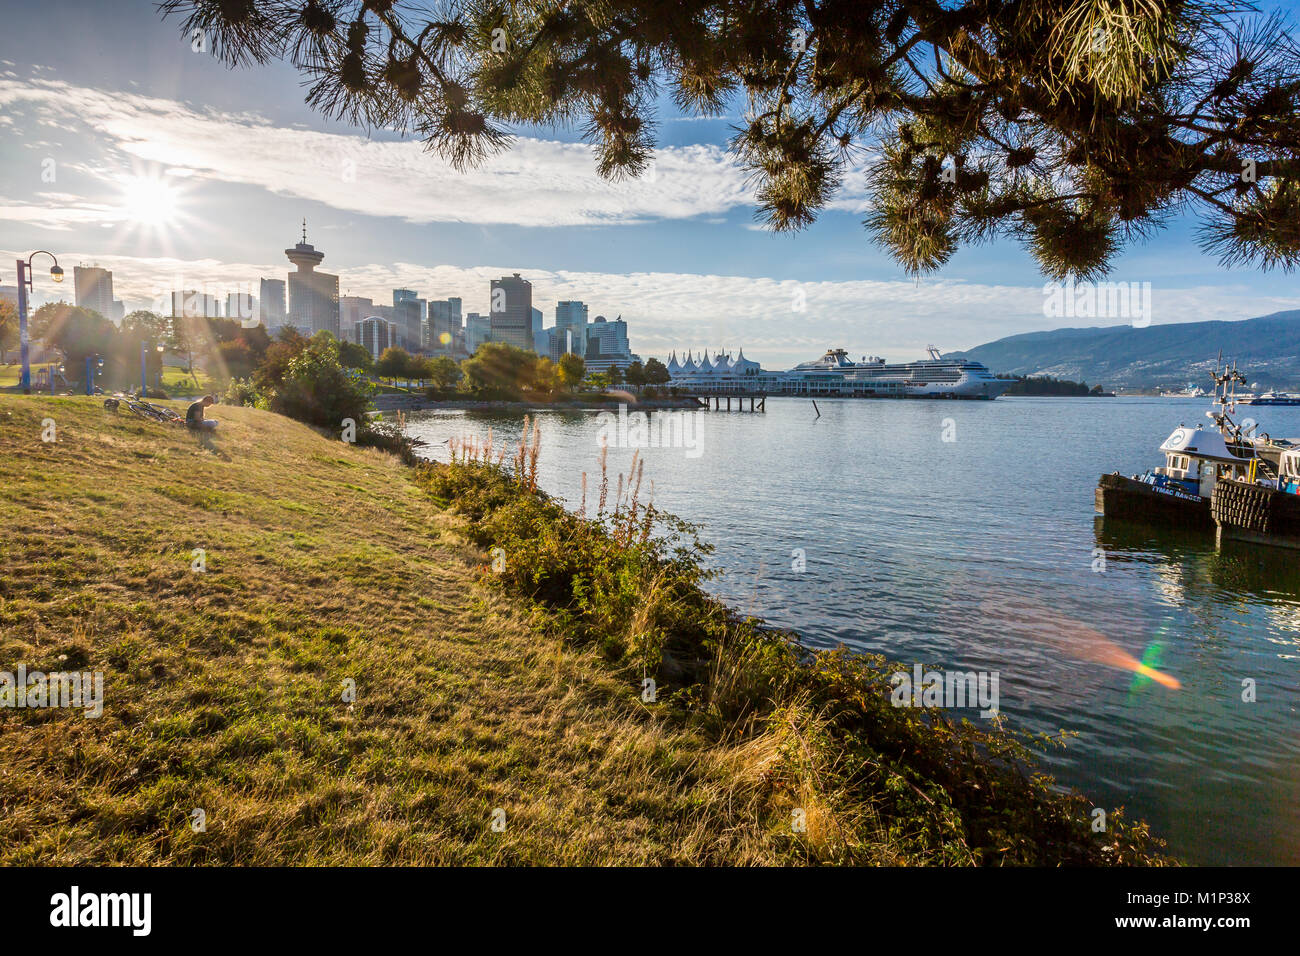 Vista del horizonte de la ciudad de Vancouver y el mirador del Parque de cangrejo en Portside, Vancouver, British Columbia, Canadá, América del Norte Foto de stock